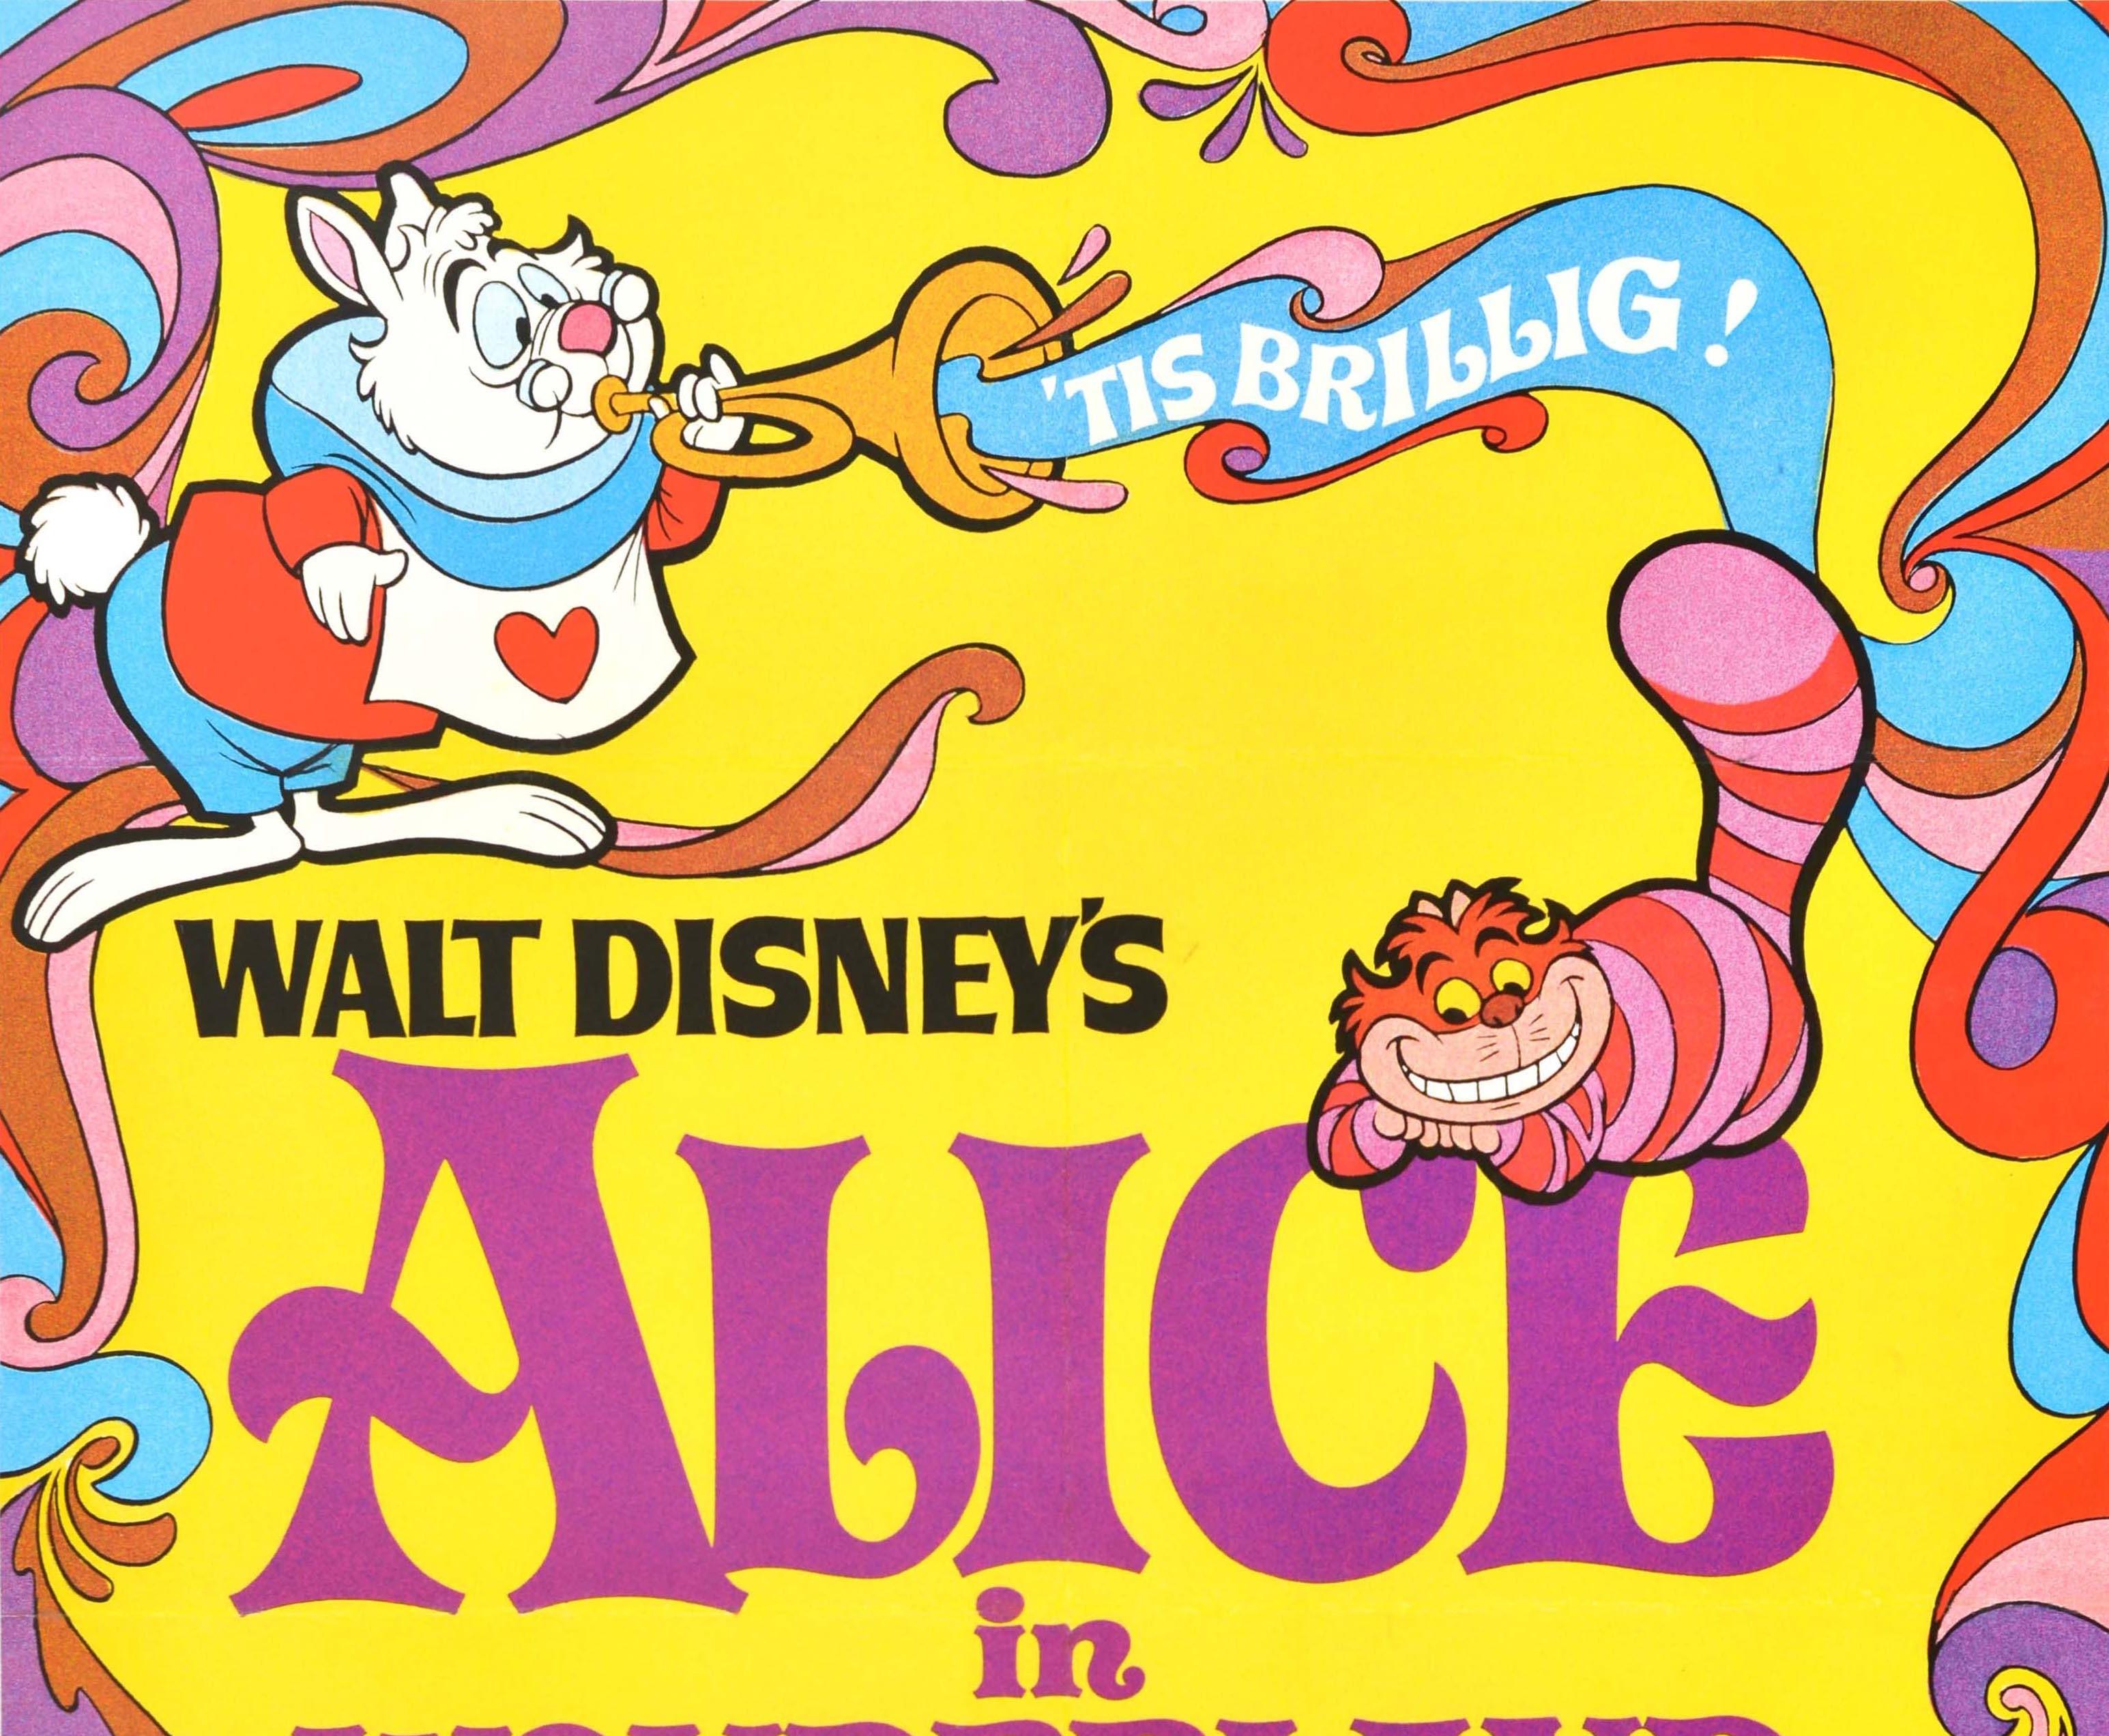 Originales Vintage-Filmplakat für die 1981er Neuauflage des klassischen Walt Disney-Zeichentrickfilms Alice im Wunderland - 'Tis brillig! - der 1951 von Buena Vista Distribution erstmals in Technicolor veröffentlicht wurde. Buntes und lustiges